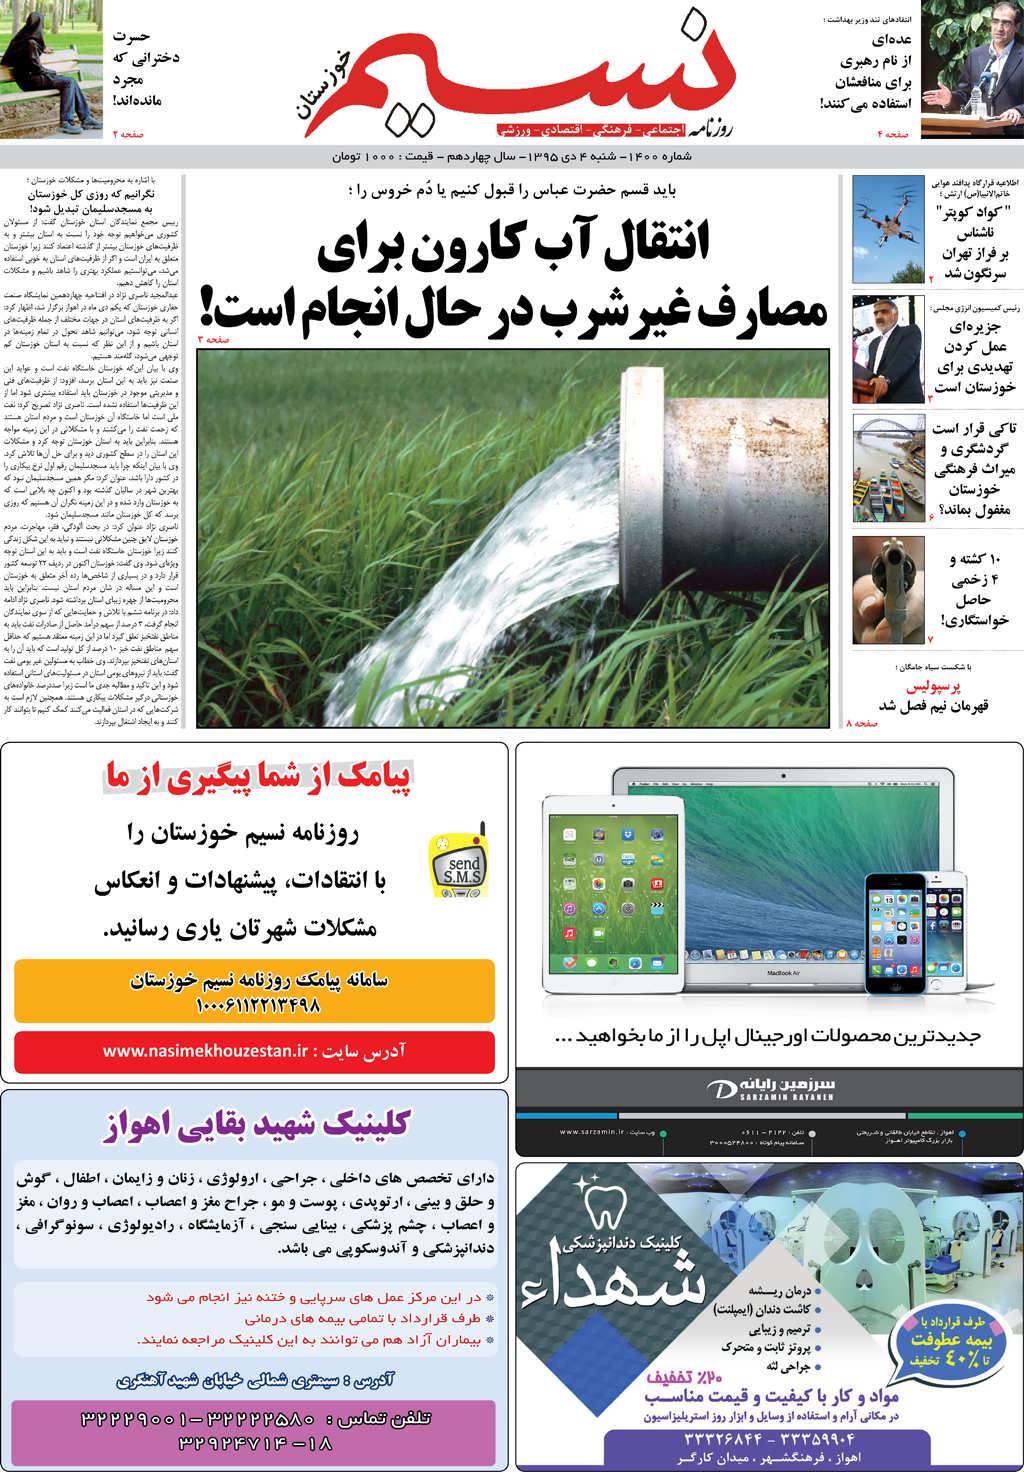 صفحه اصلی روزنامه نسیم شماره 1400